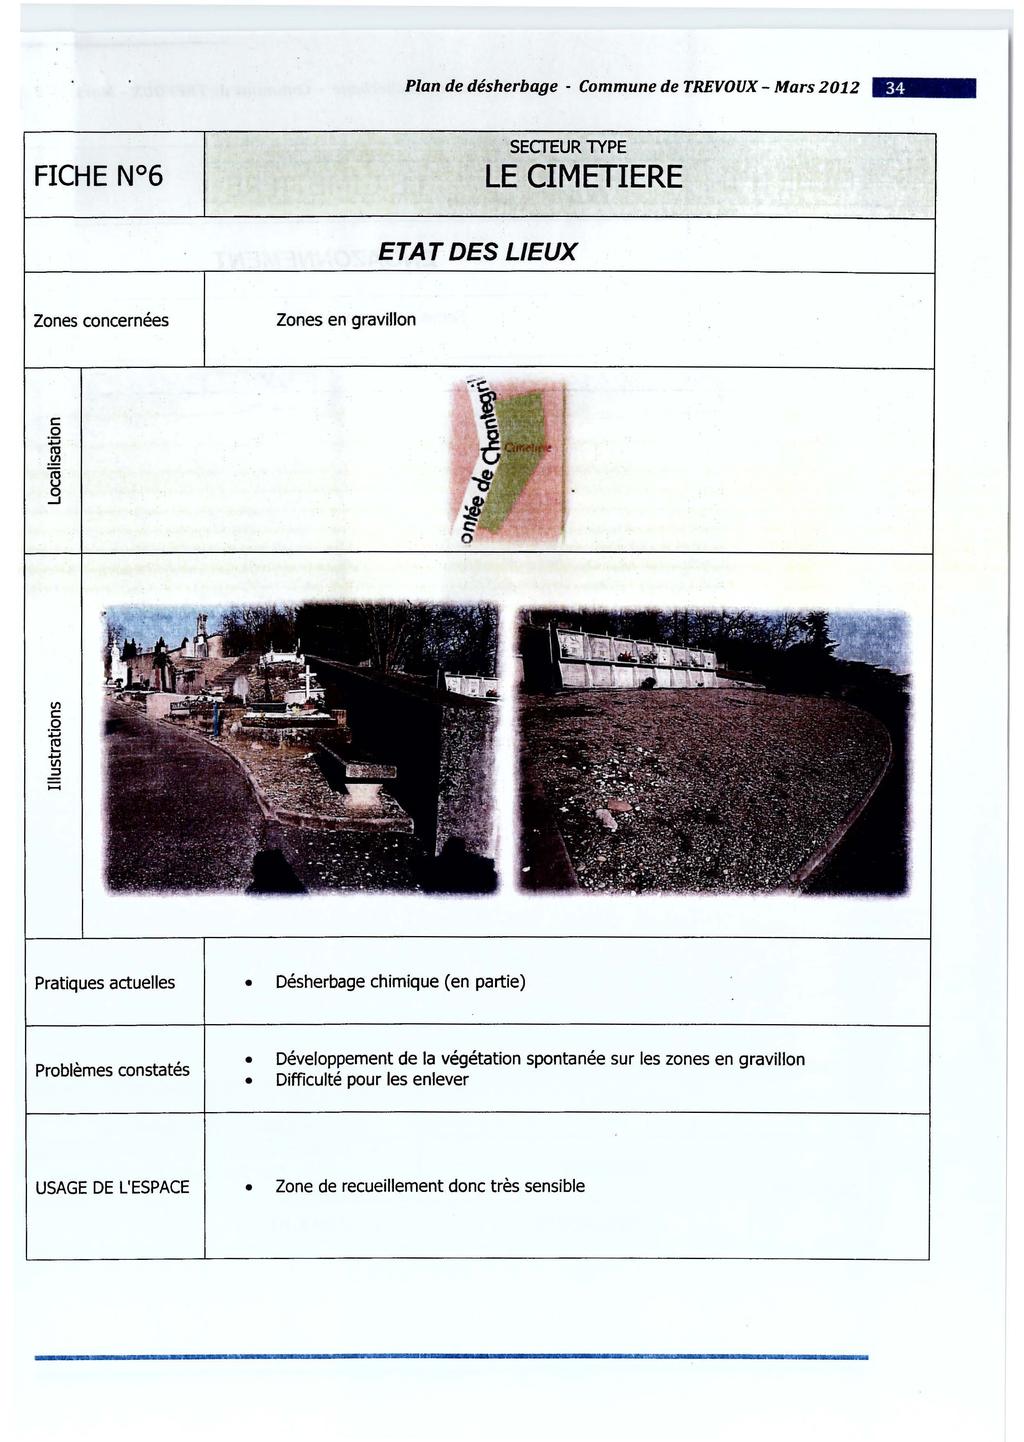 Plan de désherbage - Commune de TREVOUX- Mars 2012 - SEcrEUR TYPE LE CIMETIERE ETAT DES LIEUX Zones concernées Zones en gravillon c: 0 :.:::; ro.!!! Vl c: 0 :.:::; ti ::s.